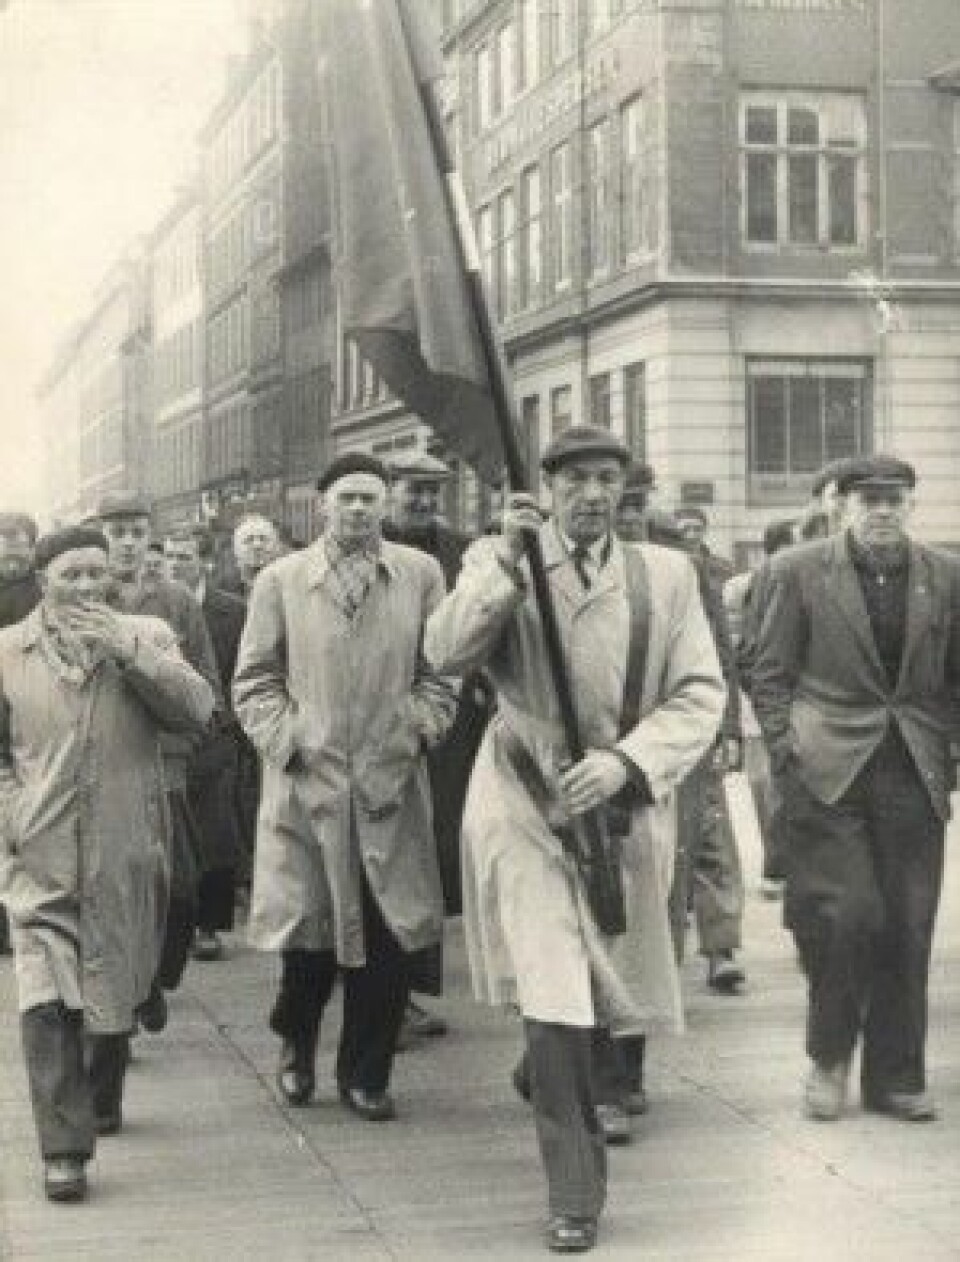 162 år etter tømmerstreiken i 1794 var havnearbeidere på barrikadene i Københavns gater under en storkonflikt i 1956. (Foto: Arbeidermuseets arkiv)